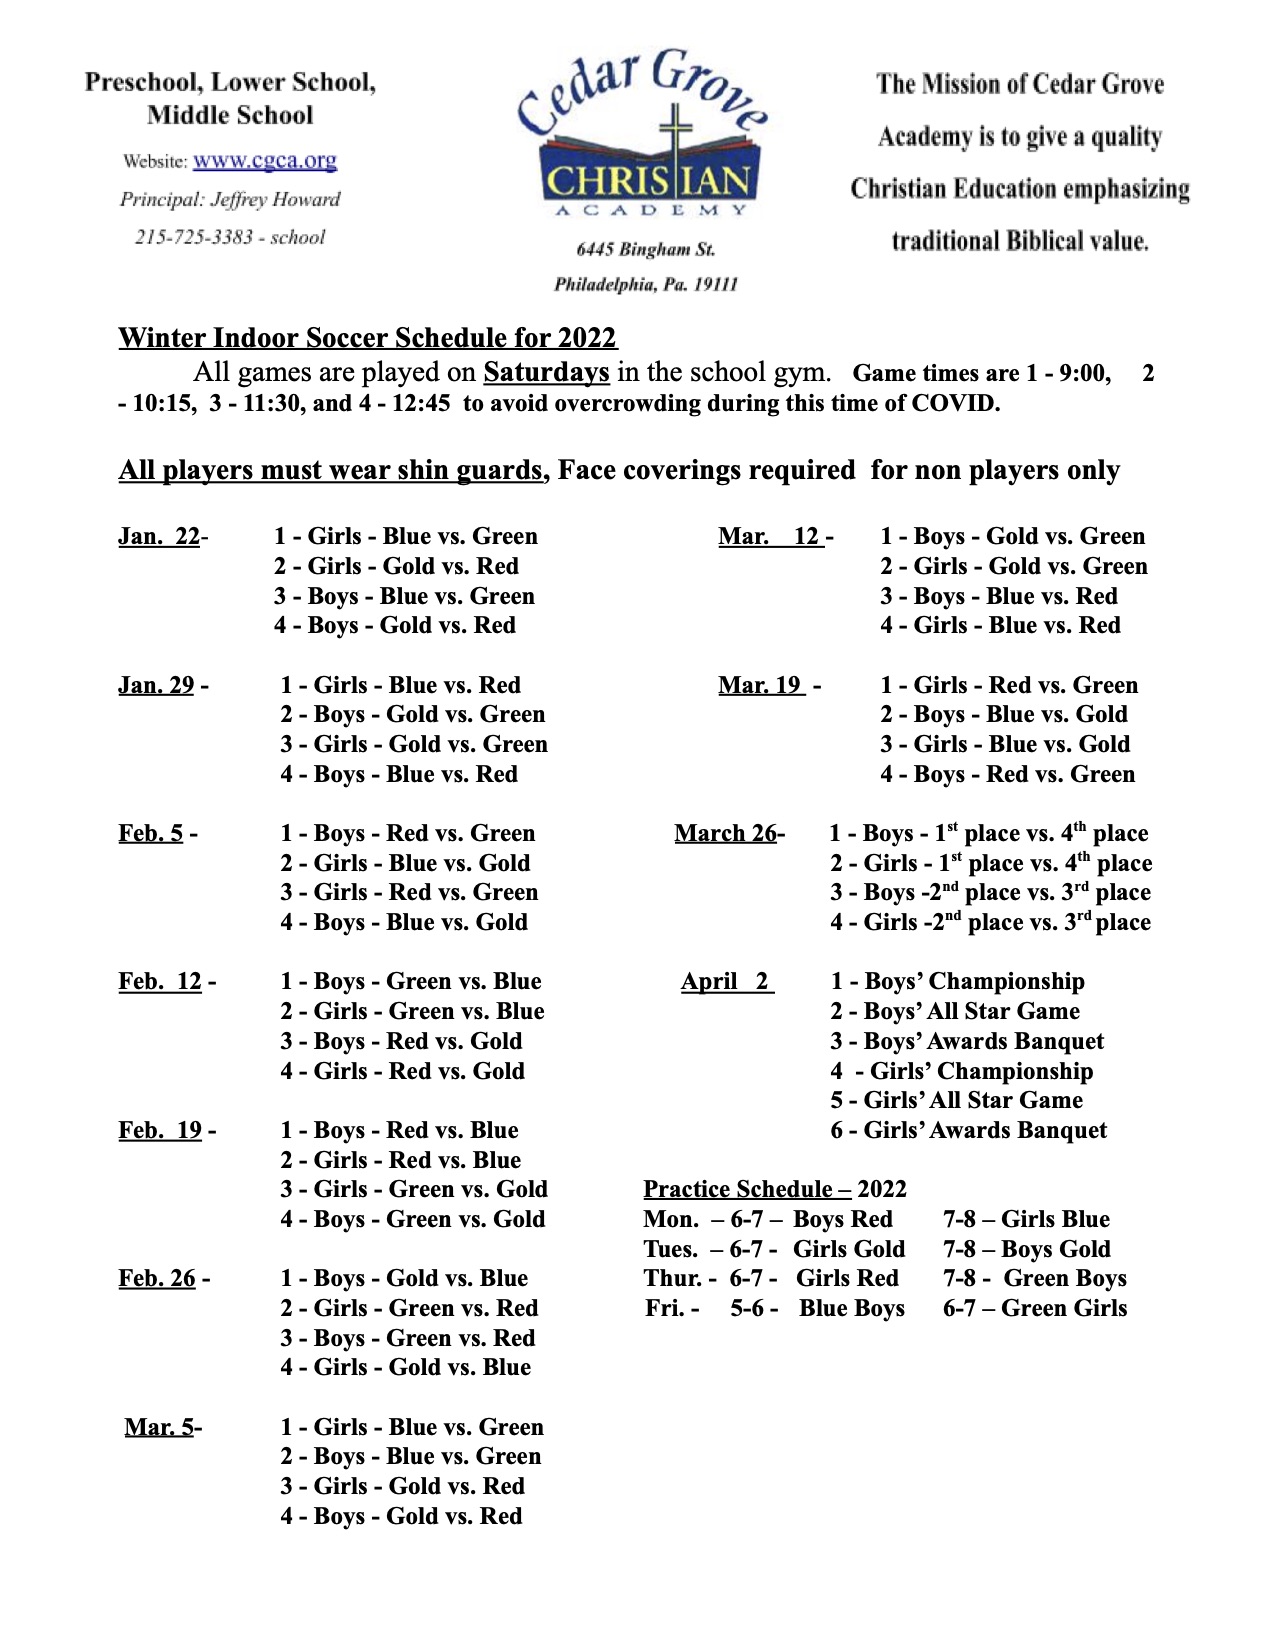 Intramural Indoor Soccer Schedule - Cedar Grove Christian Academy